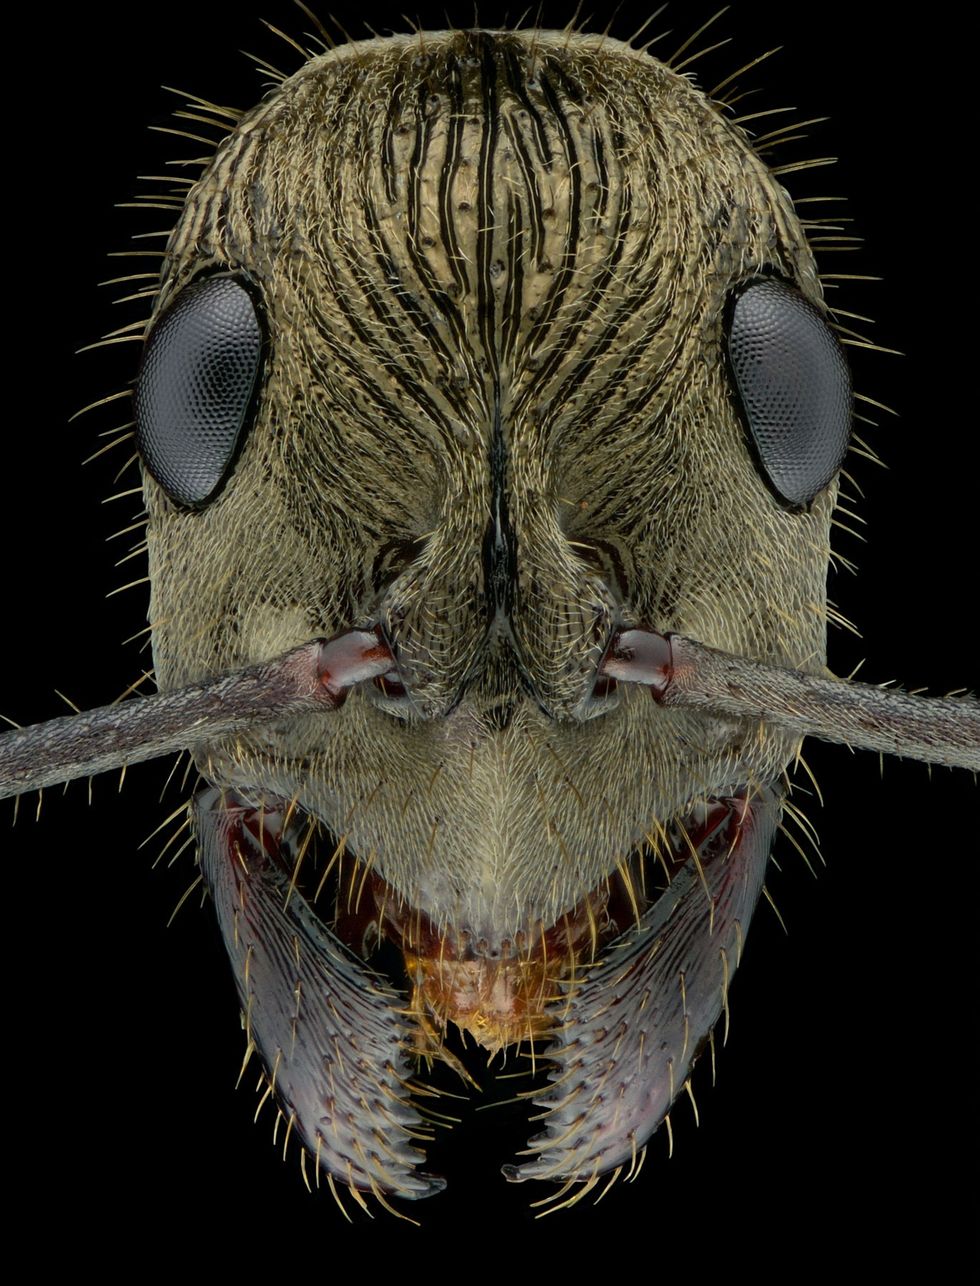 Foto's mierenkoppen de van deze insecten